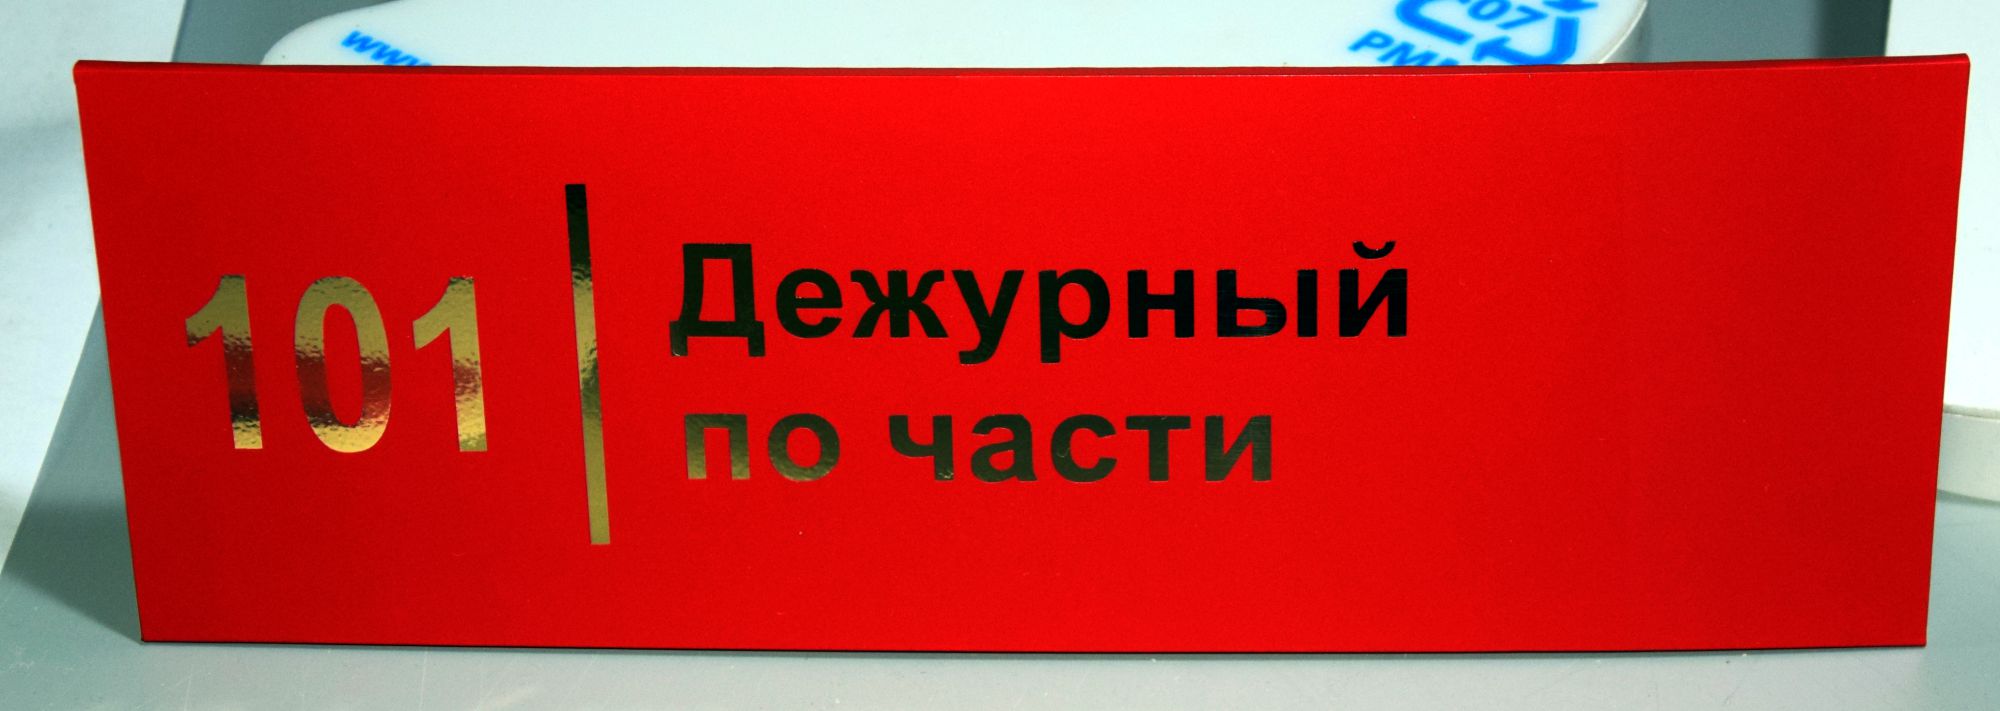 Таблички на двери кабинетов изготовлены для воинской части в Ростове-на-Дону.